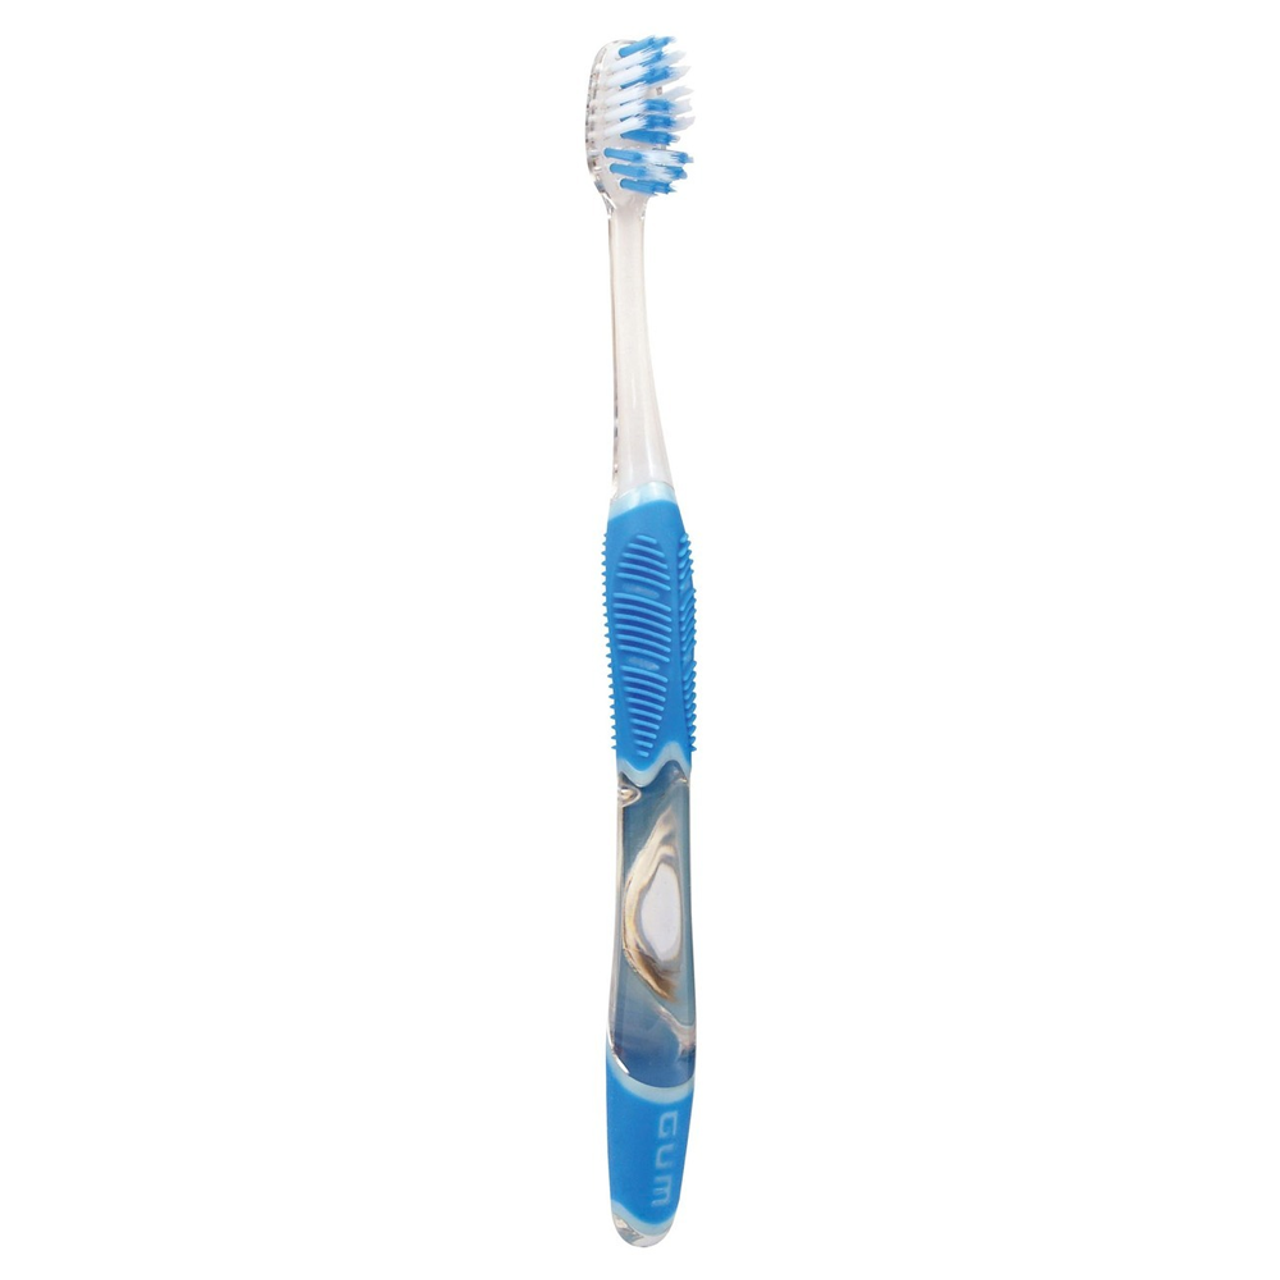 Sunstar GUM Technique Complete Care Toothbrush, Soft Bristles, Compact Head, 1 dz/bx